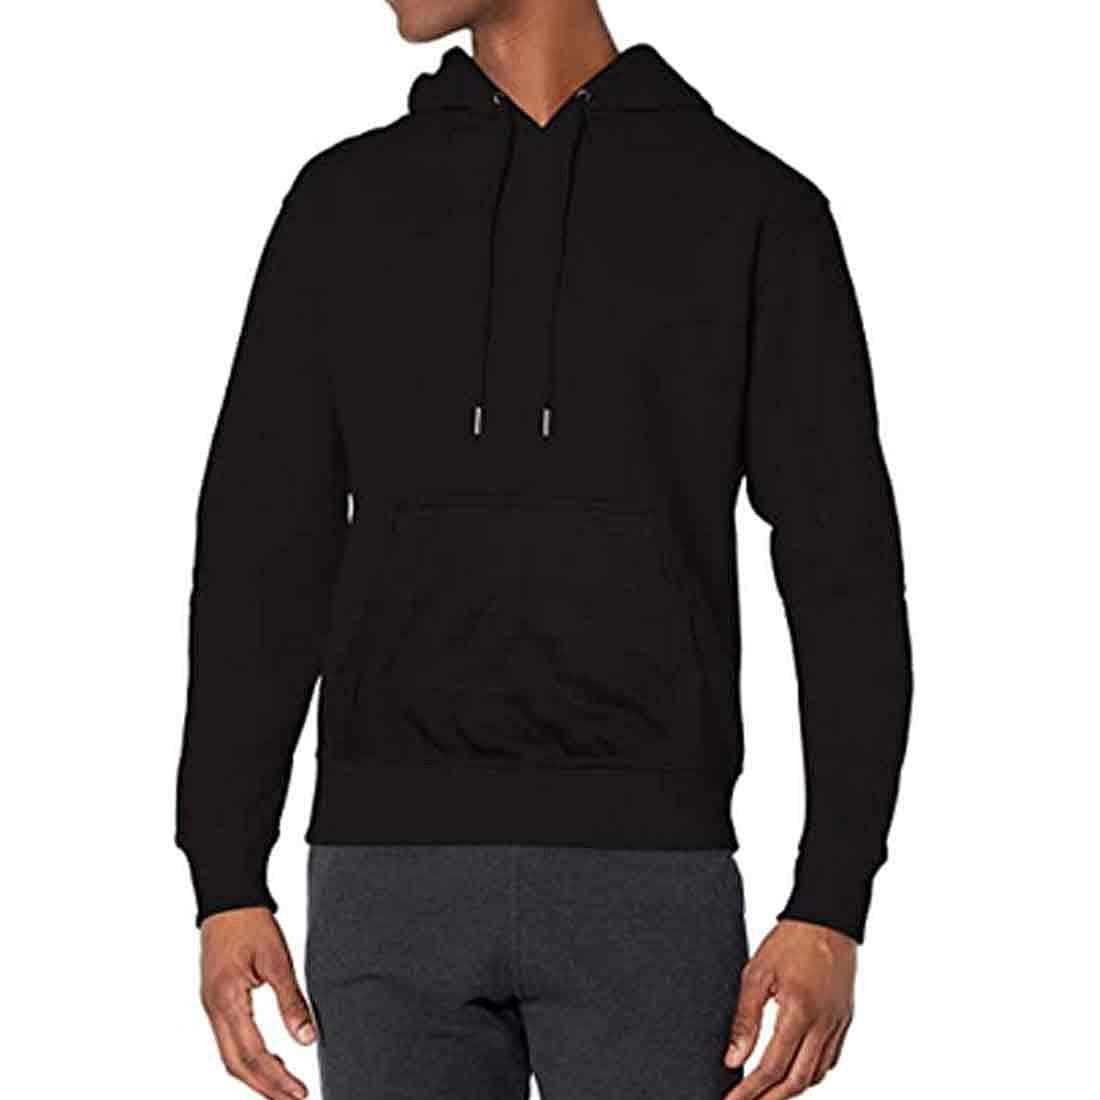 Nutcase Personalised Hoodies for Men Black Sweatshirt-Box Initial Nutcase